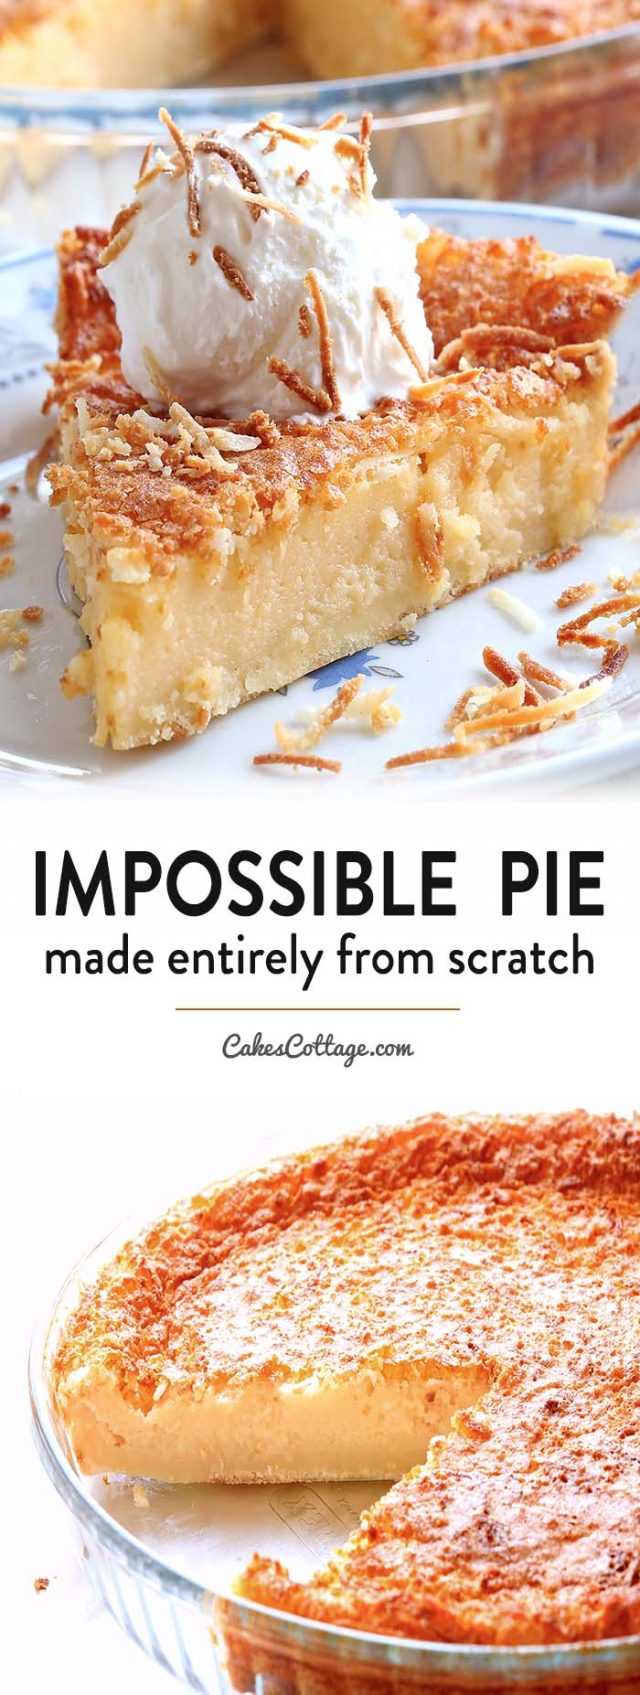 Impossible Pie Recipe - Cakescottage